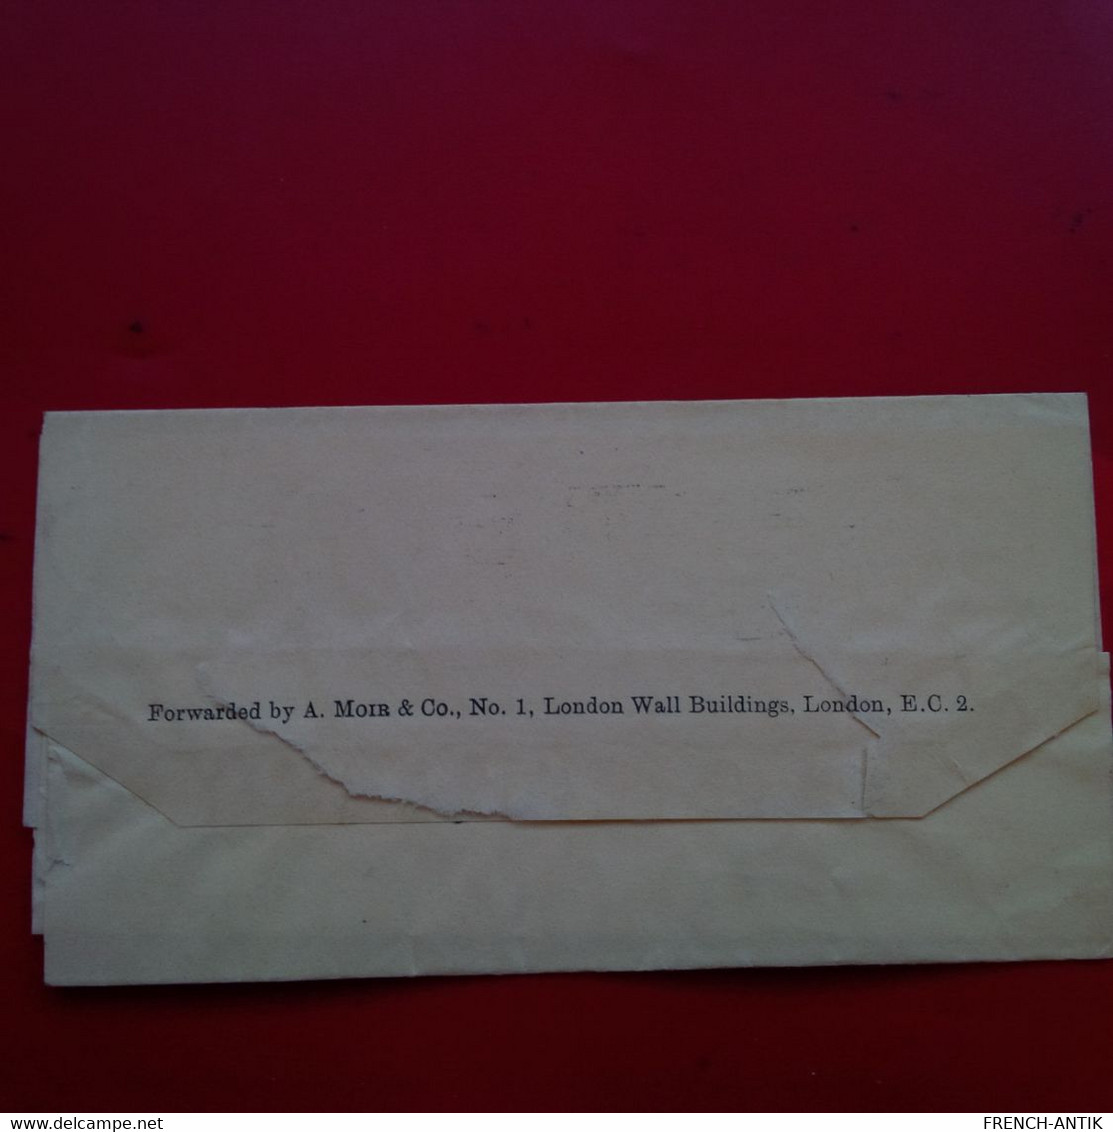 LETTRE LONDON POUR PARIS GENERAL HENRY L.E.LE ROND 1933 - Cartas & Documentos